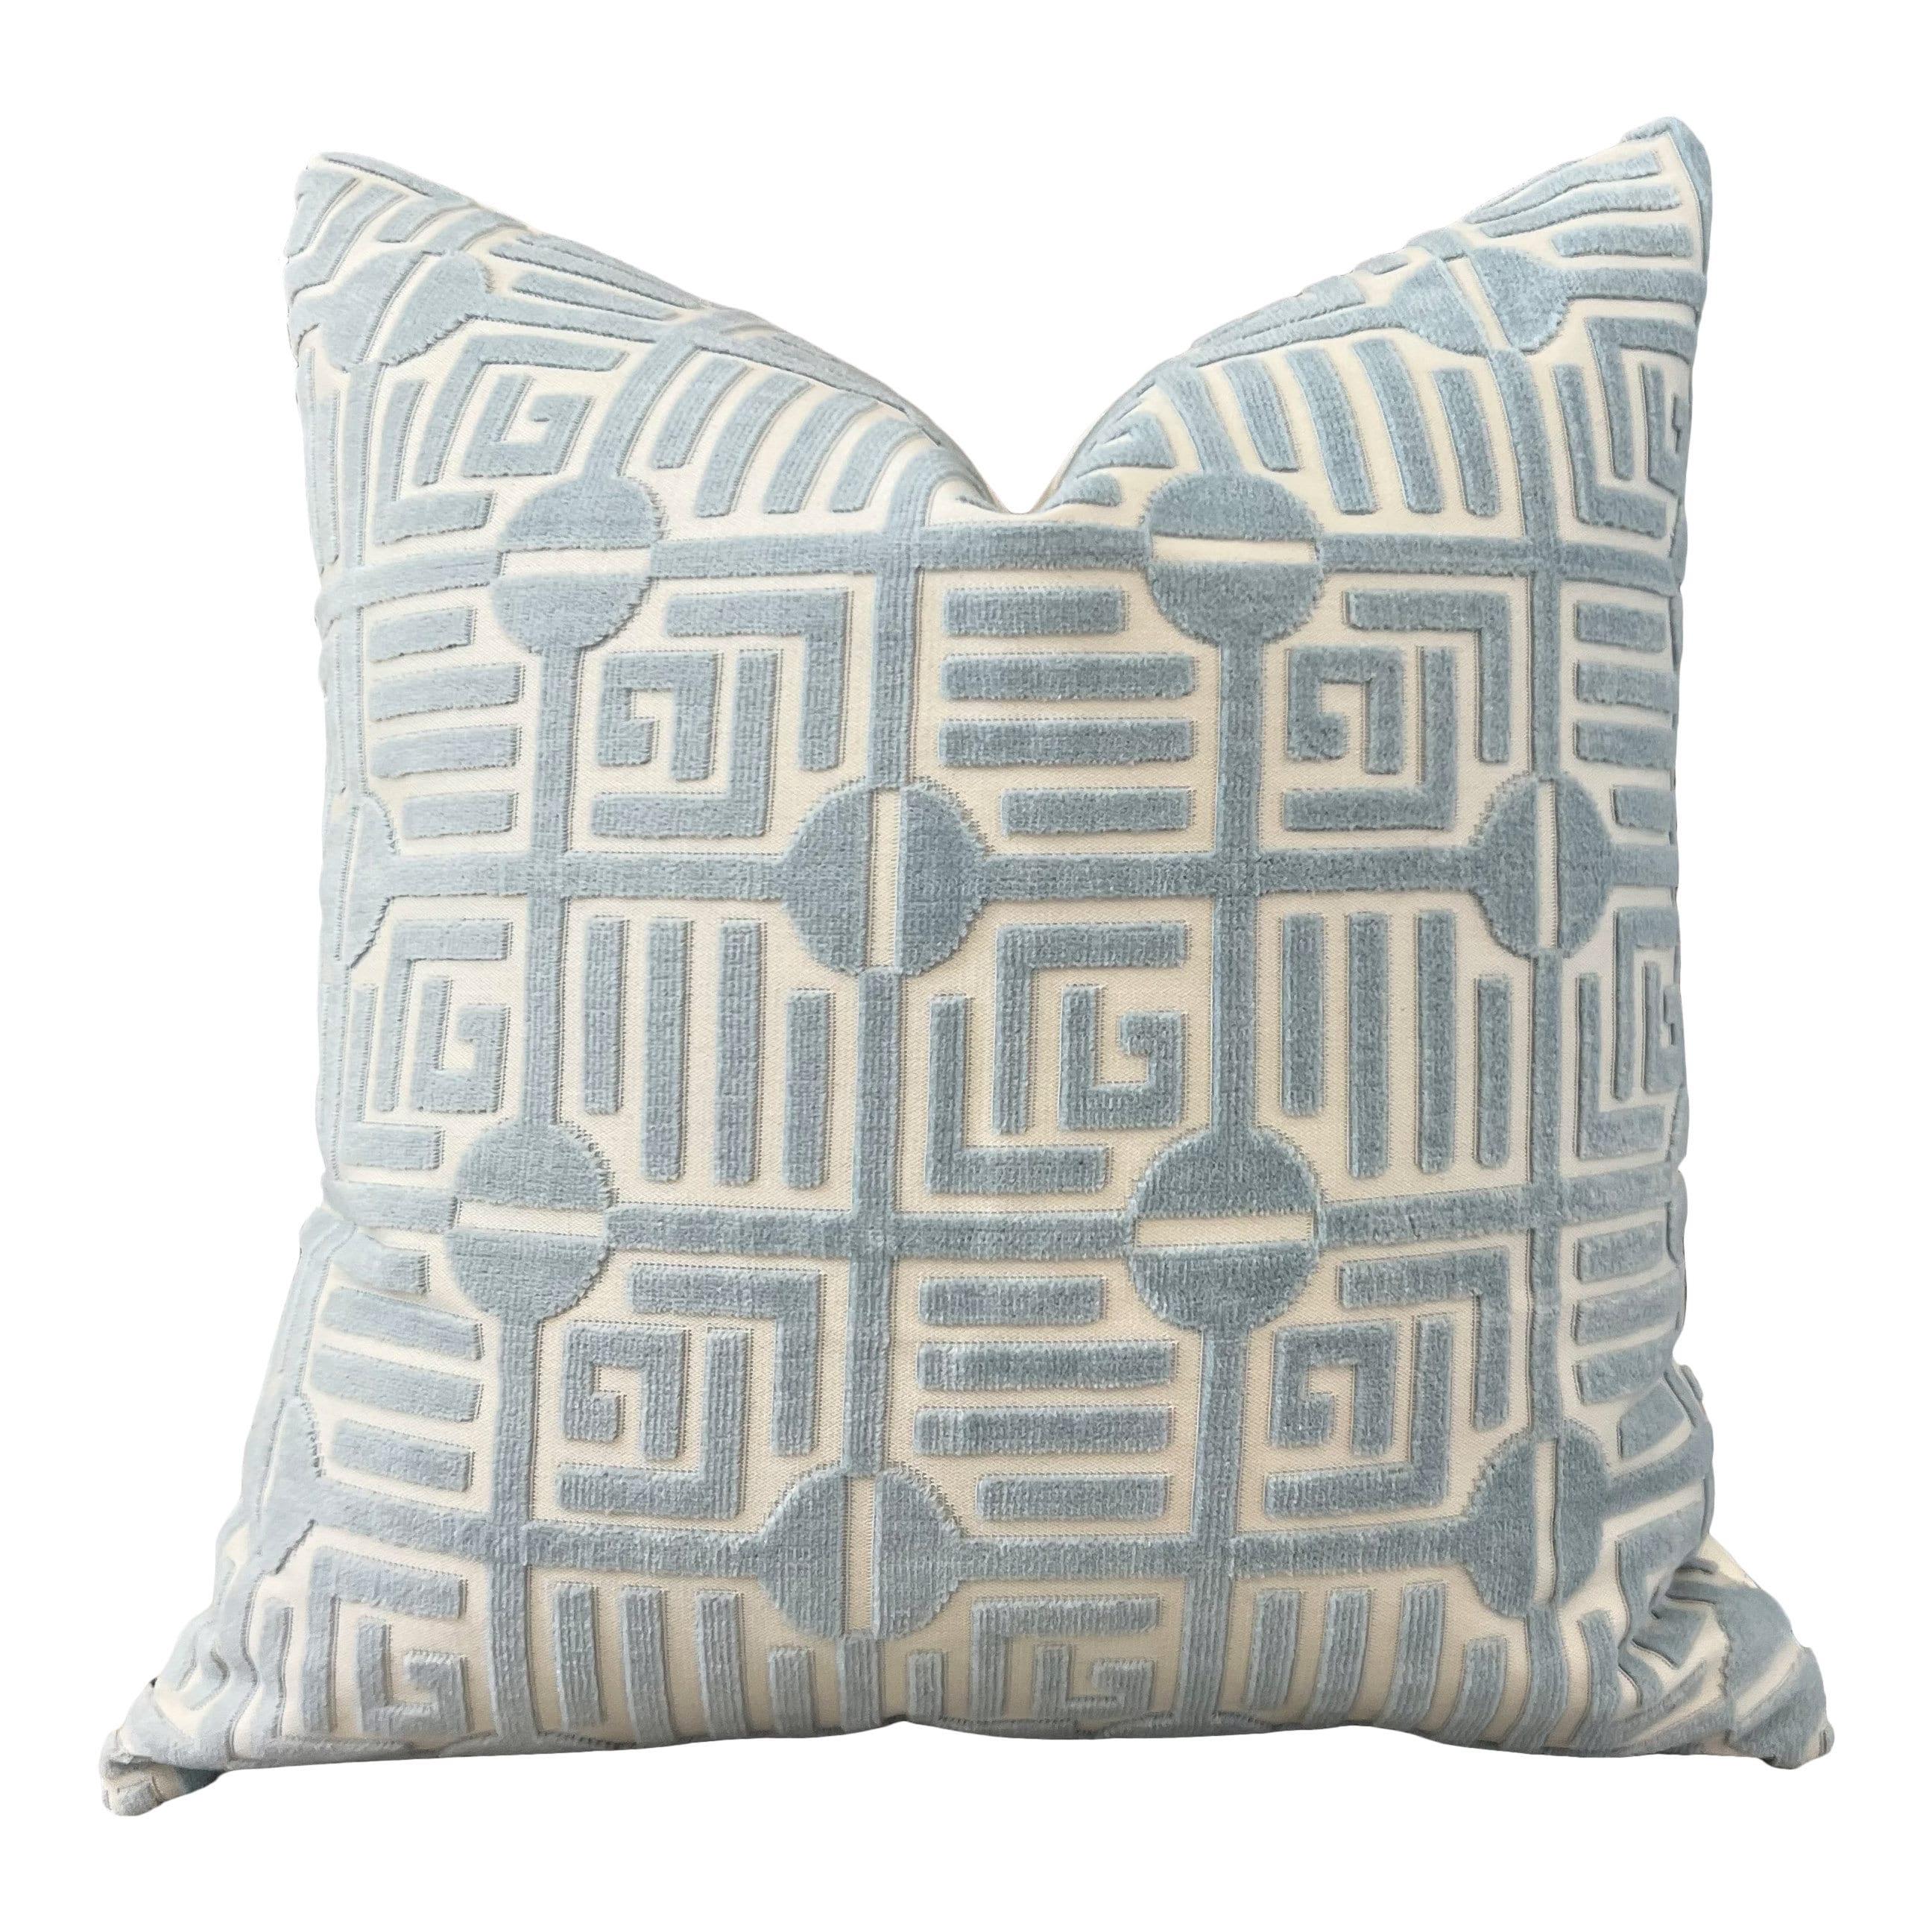 Thibaut Labyrinth Velvet Pillow in Spa Blue. High End Pillows, Designer Raised Velvet Pillows, Geometric Velvet Pillows in Light Blue